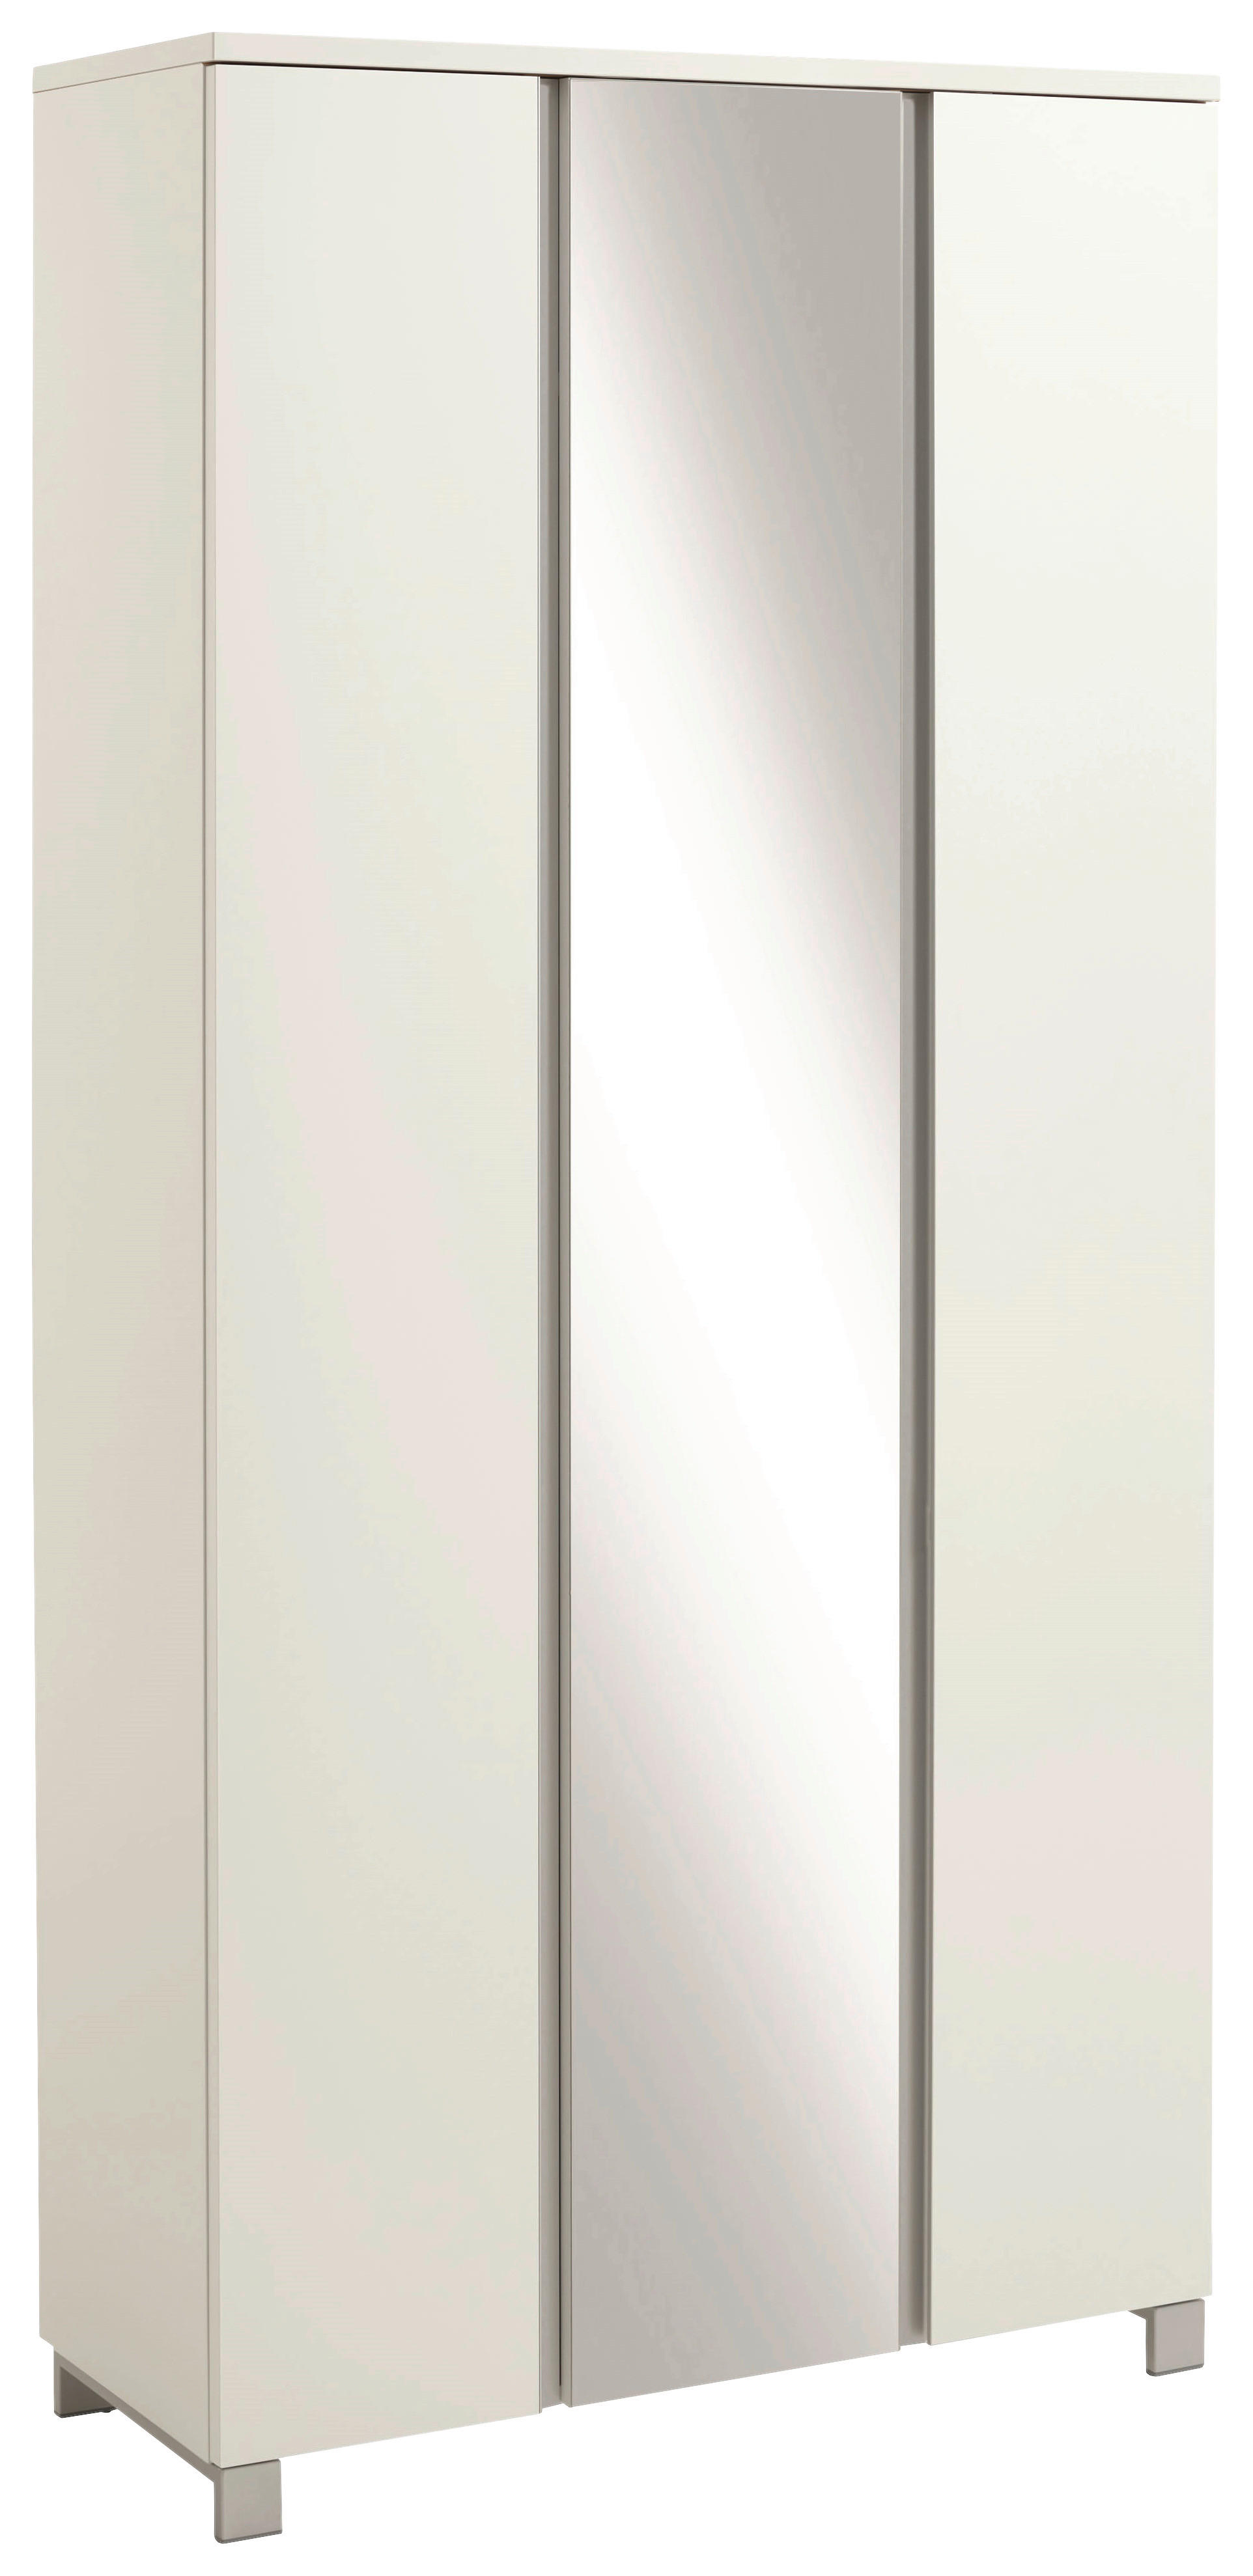 GARDEROBENSCHRANK 89/193/37 cm  - Silberfarben/Weiß, Design, Glas/Holzwerkstoff (89/193/37cm)